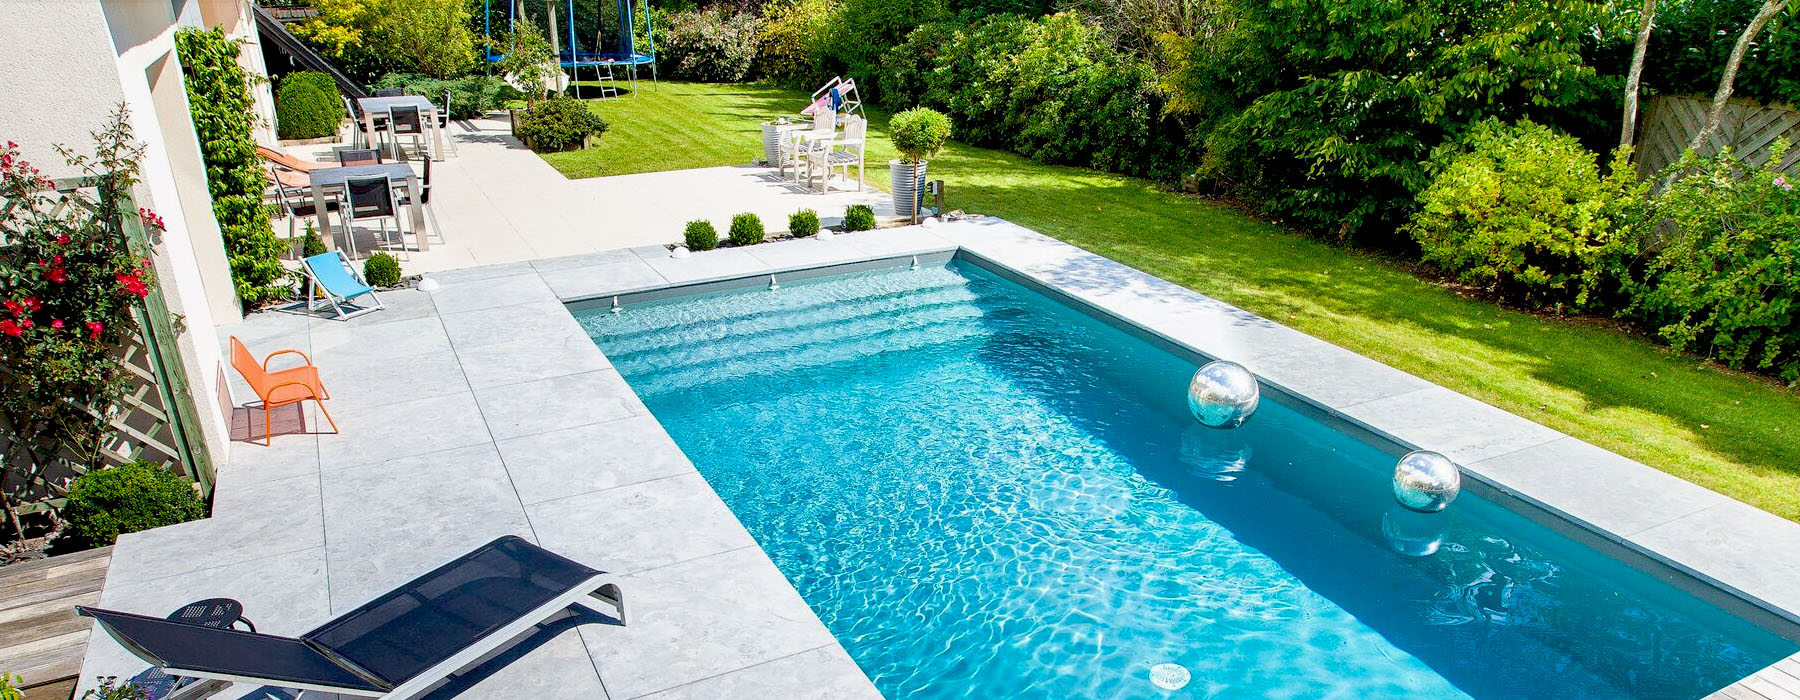 Créa piscines - Vente, installation et aménagement de piscine à Rennes